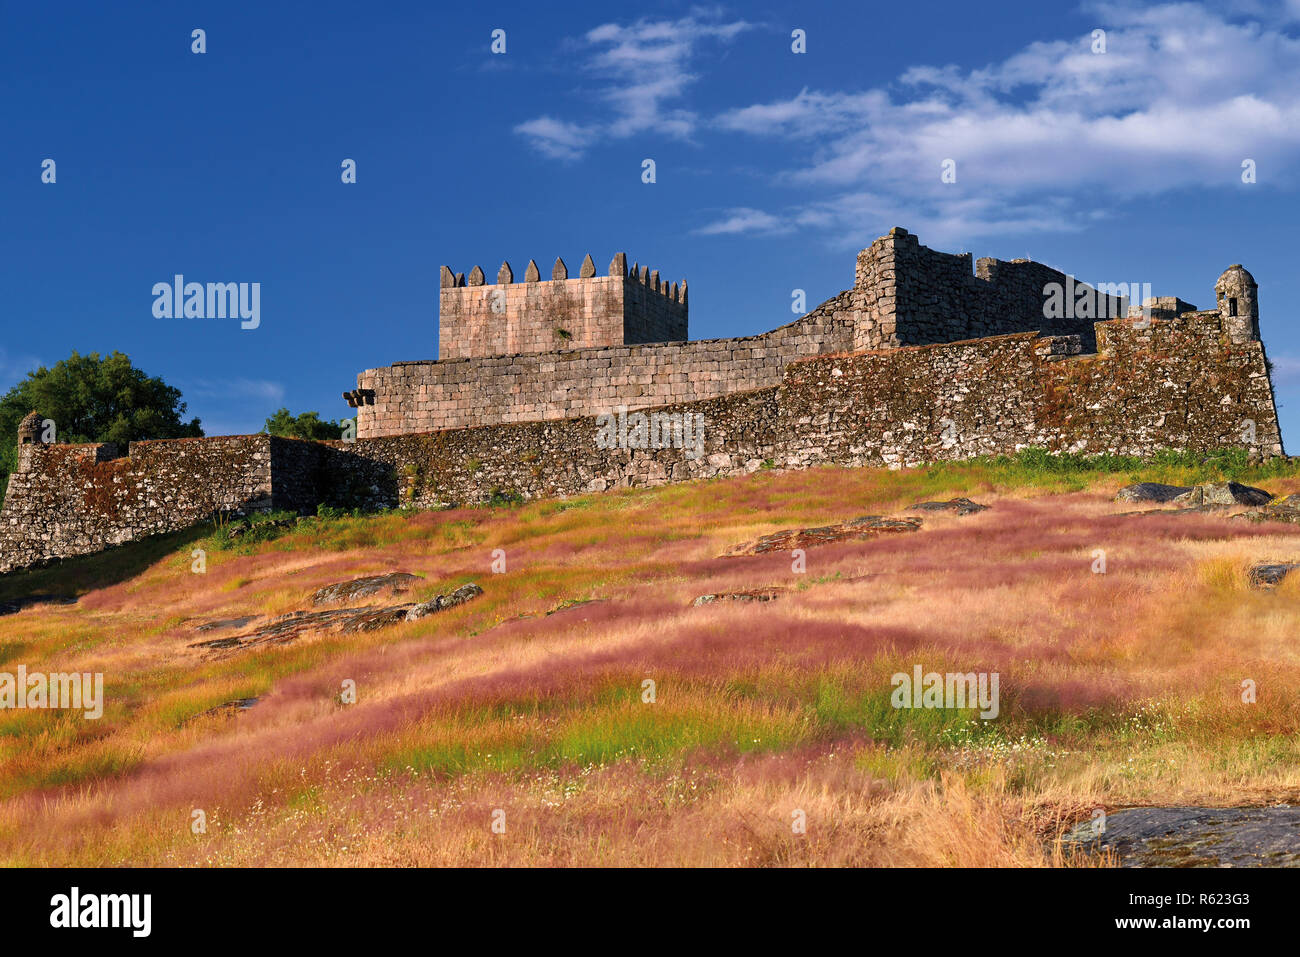 Mittelalterliche Burg mit Turm und Mauern Ruine Stockfoto